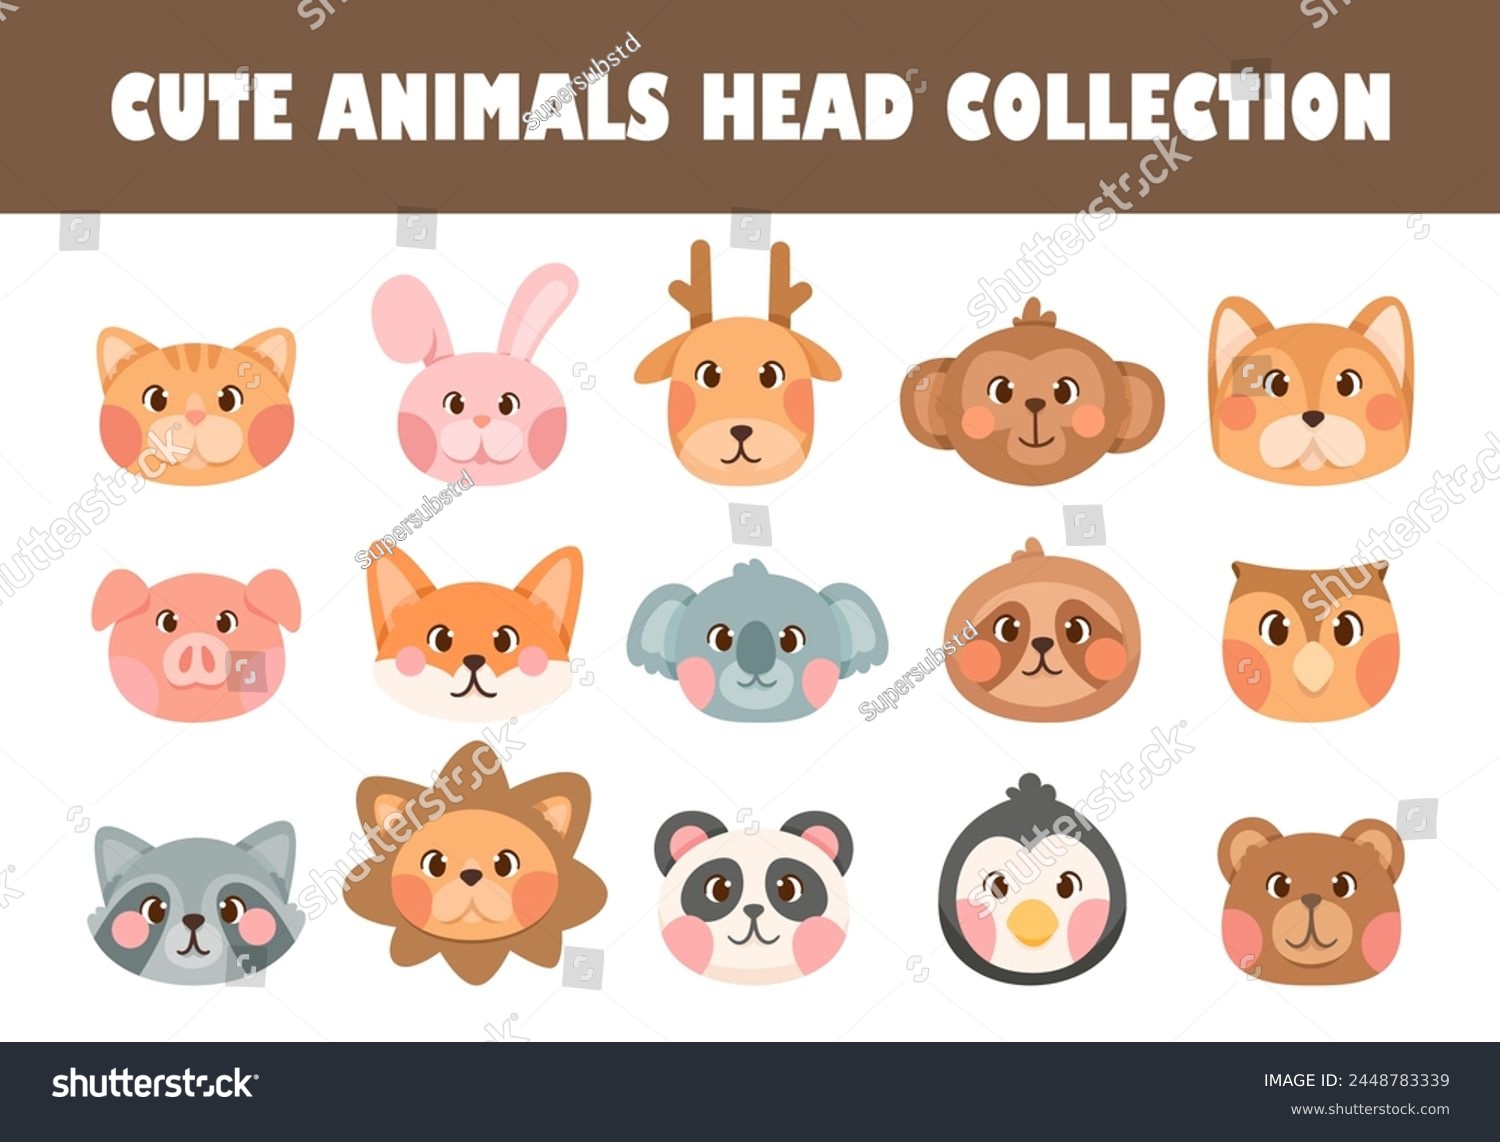 SVG of Set of cute animals head vector illustration svg